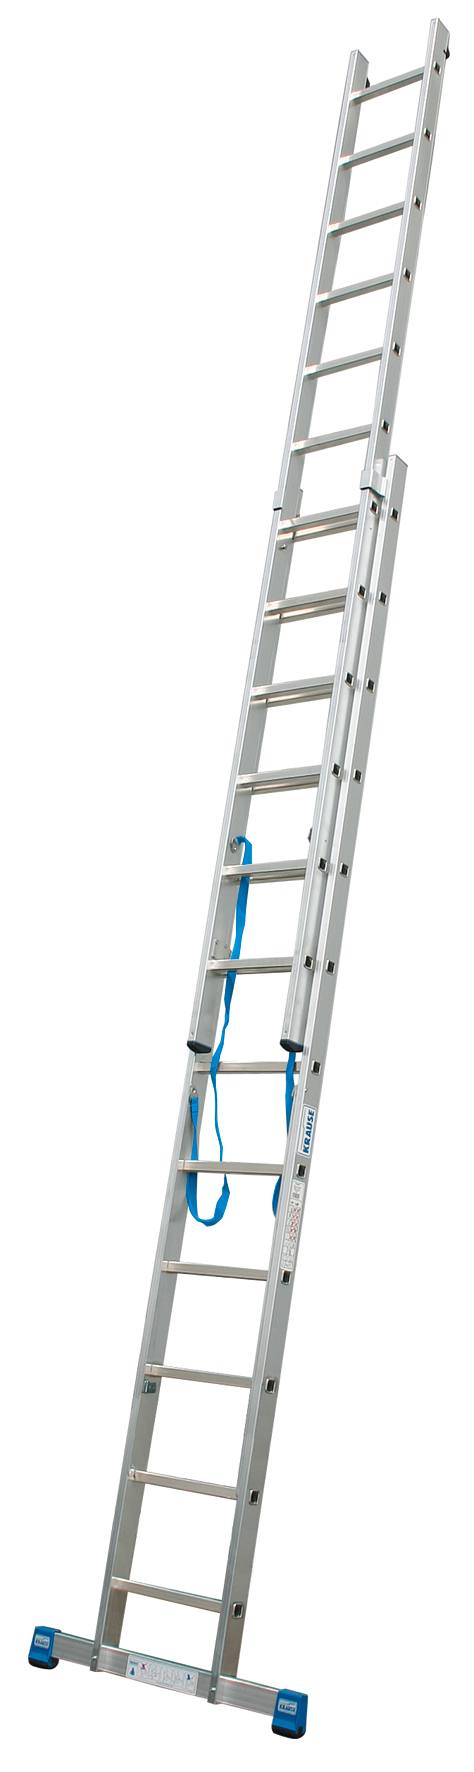 Дополнительное изображение Krause Stabilo лестница алюминиевая двухсторонняя (2х12 ступеней)